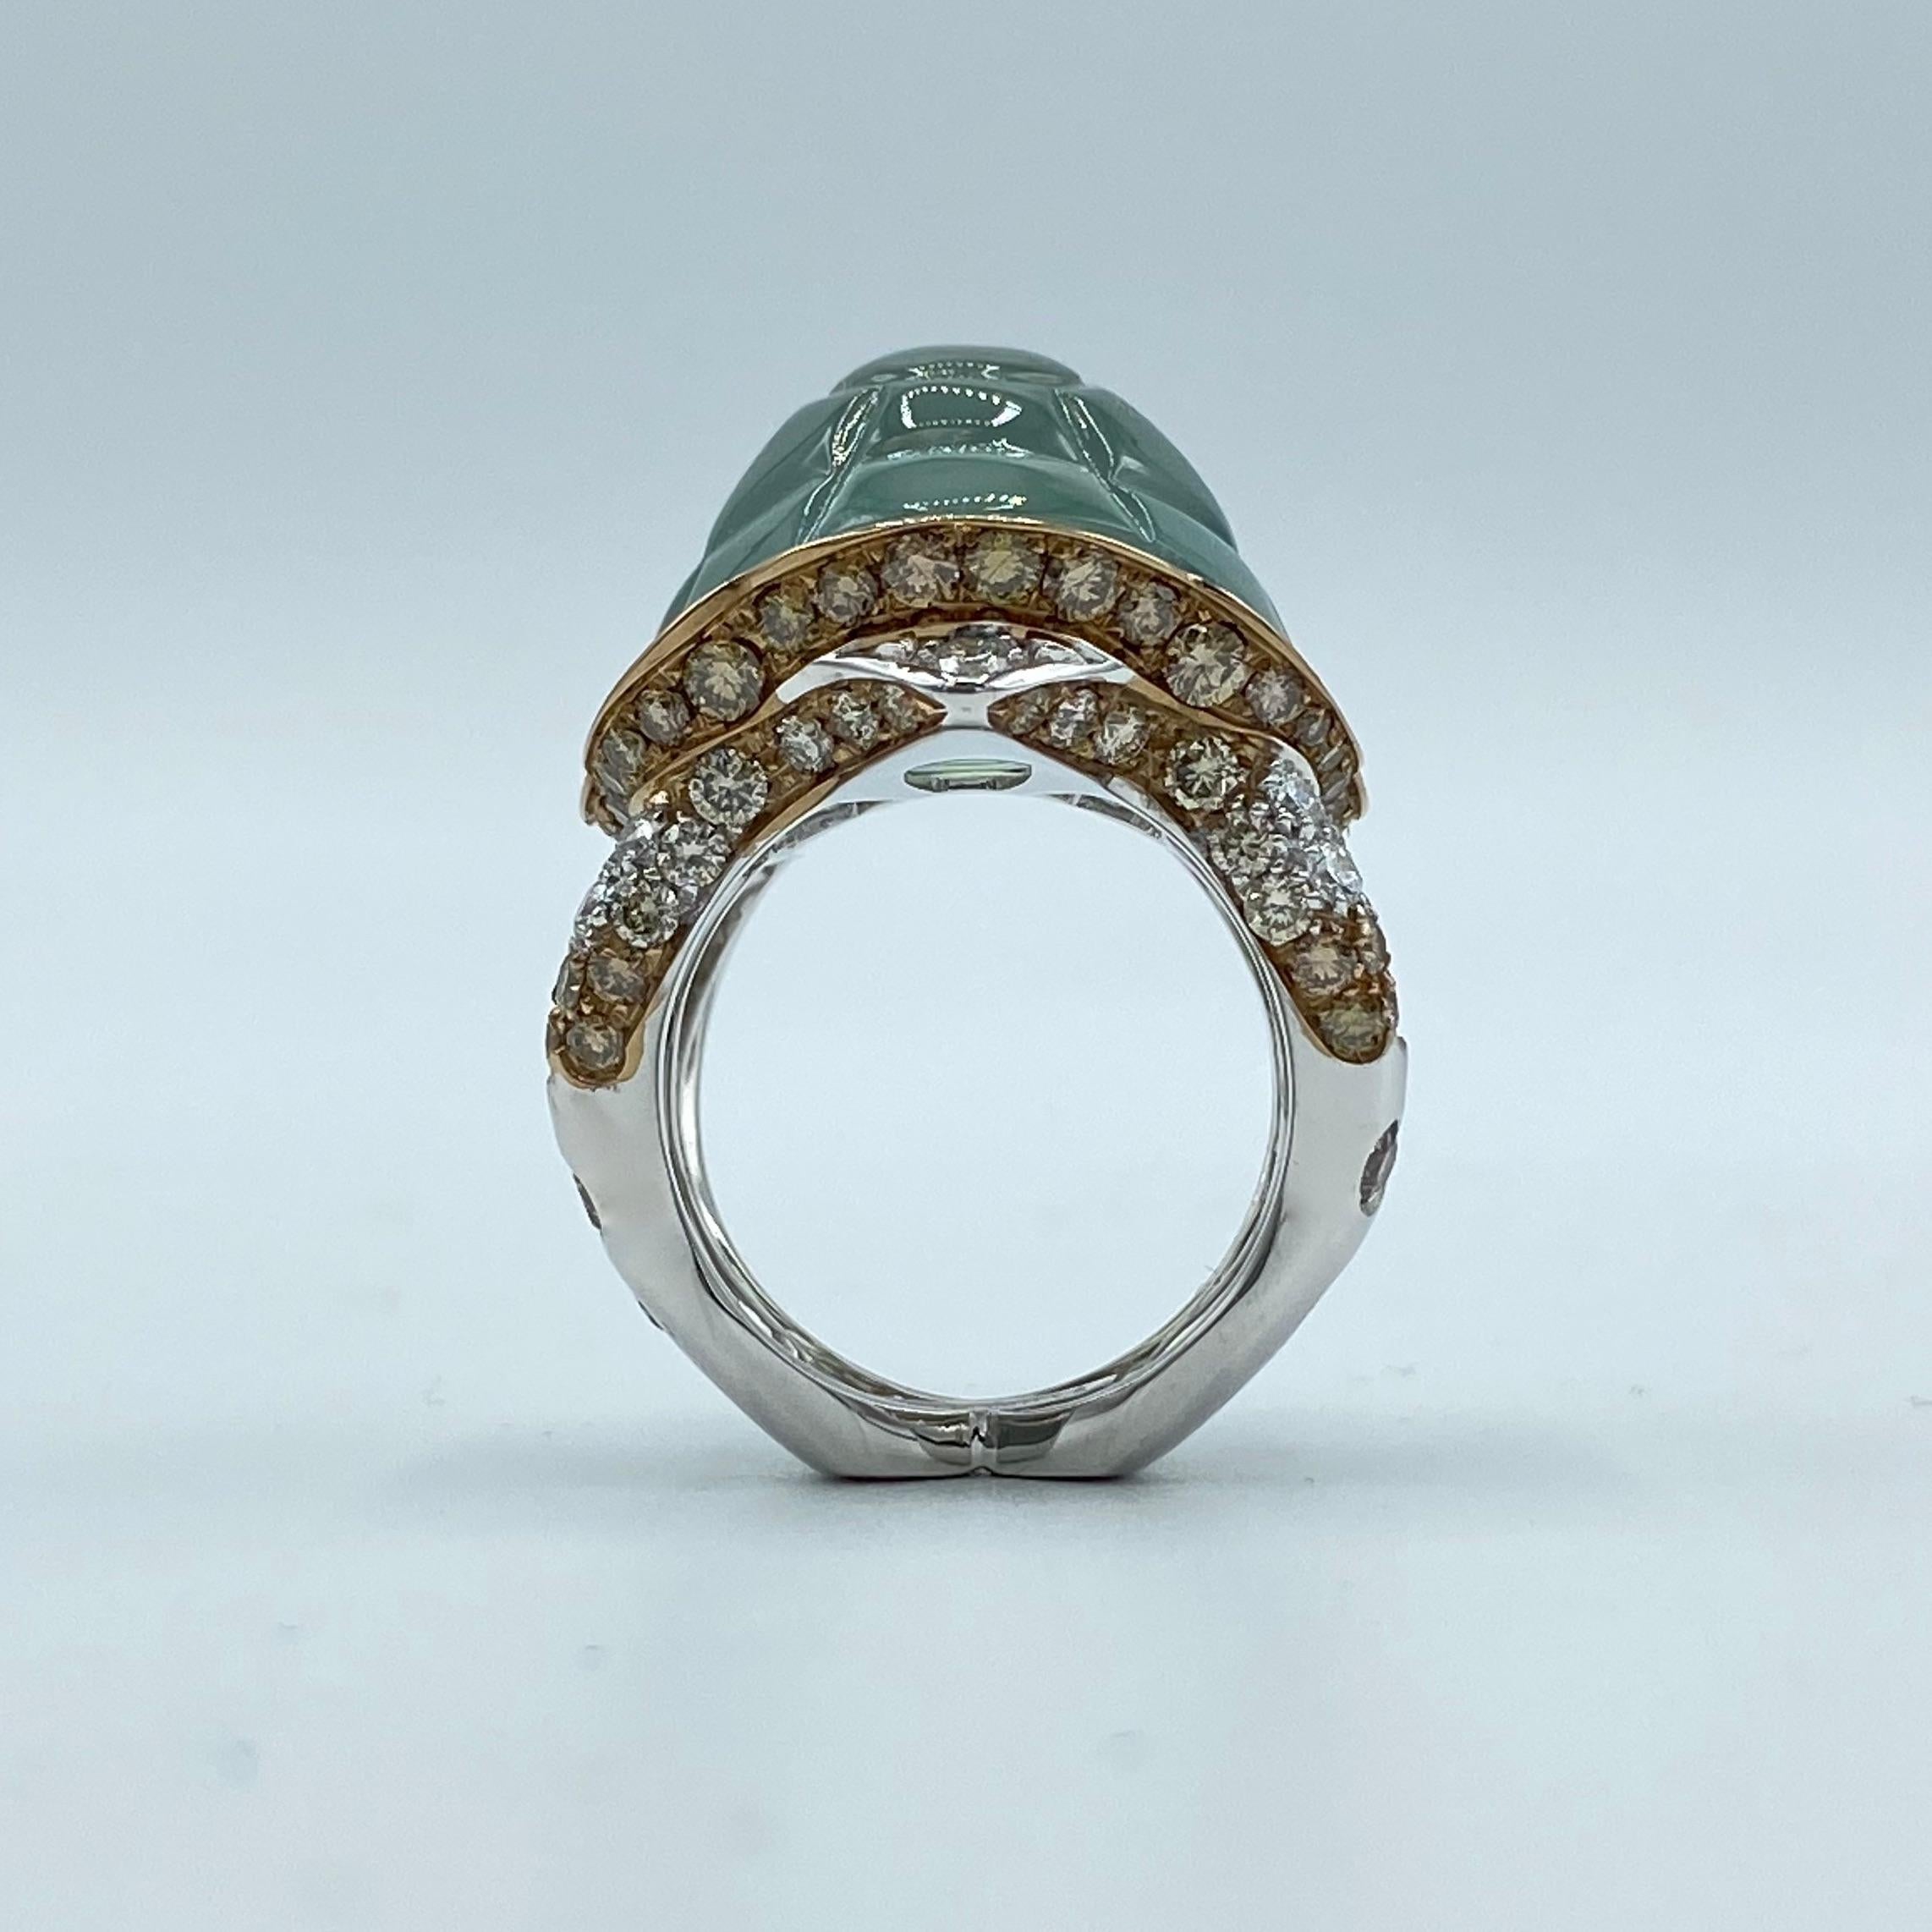 Contemporary Jewelry Turtle Black Brown White Diamond Prehnite 18 Karat Gold Ring